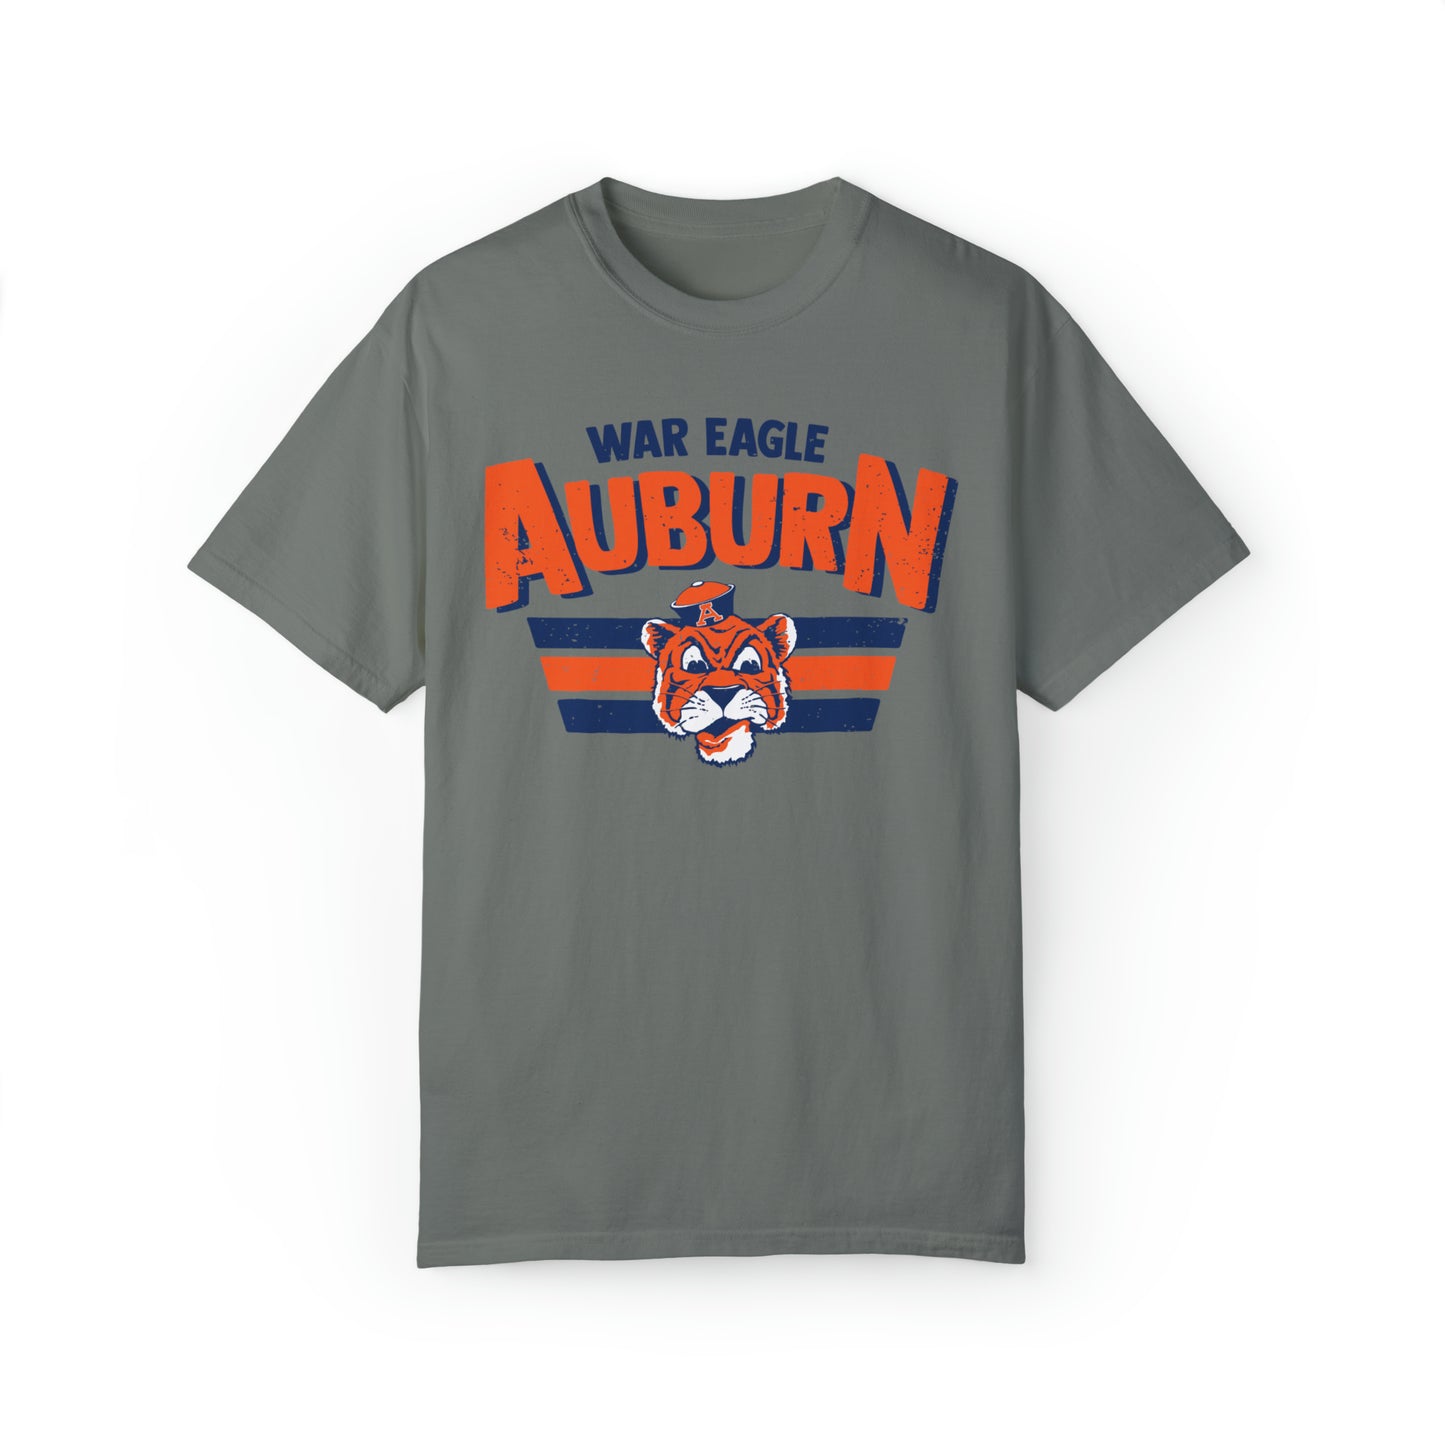 War Eagle Auburn Shirt